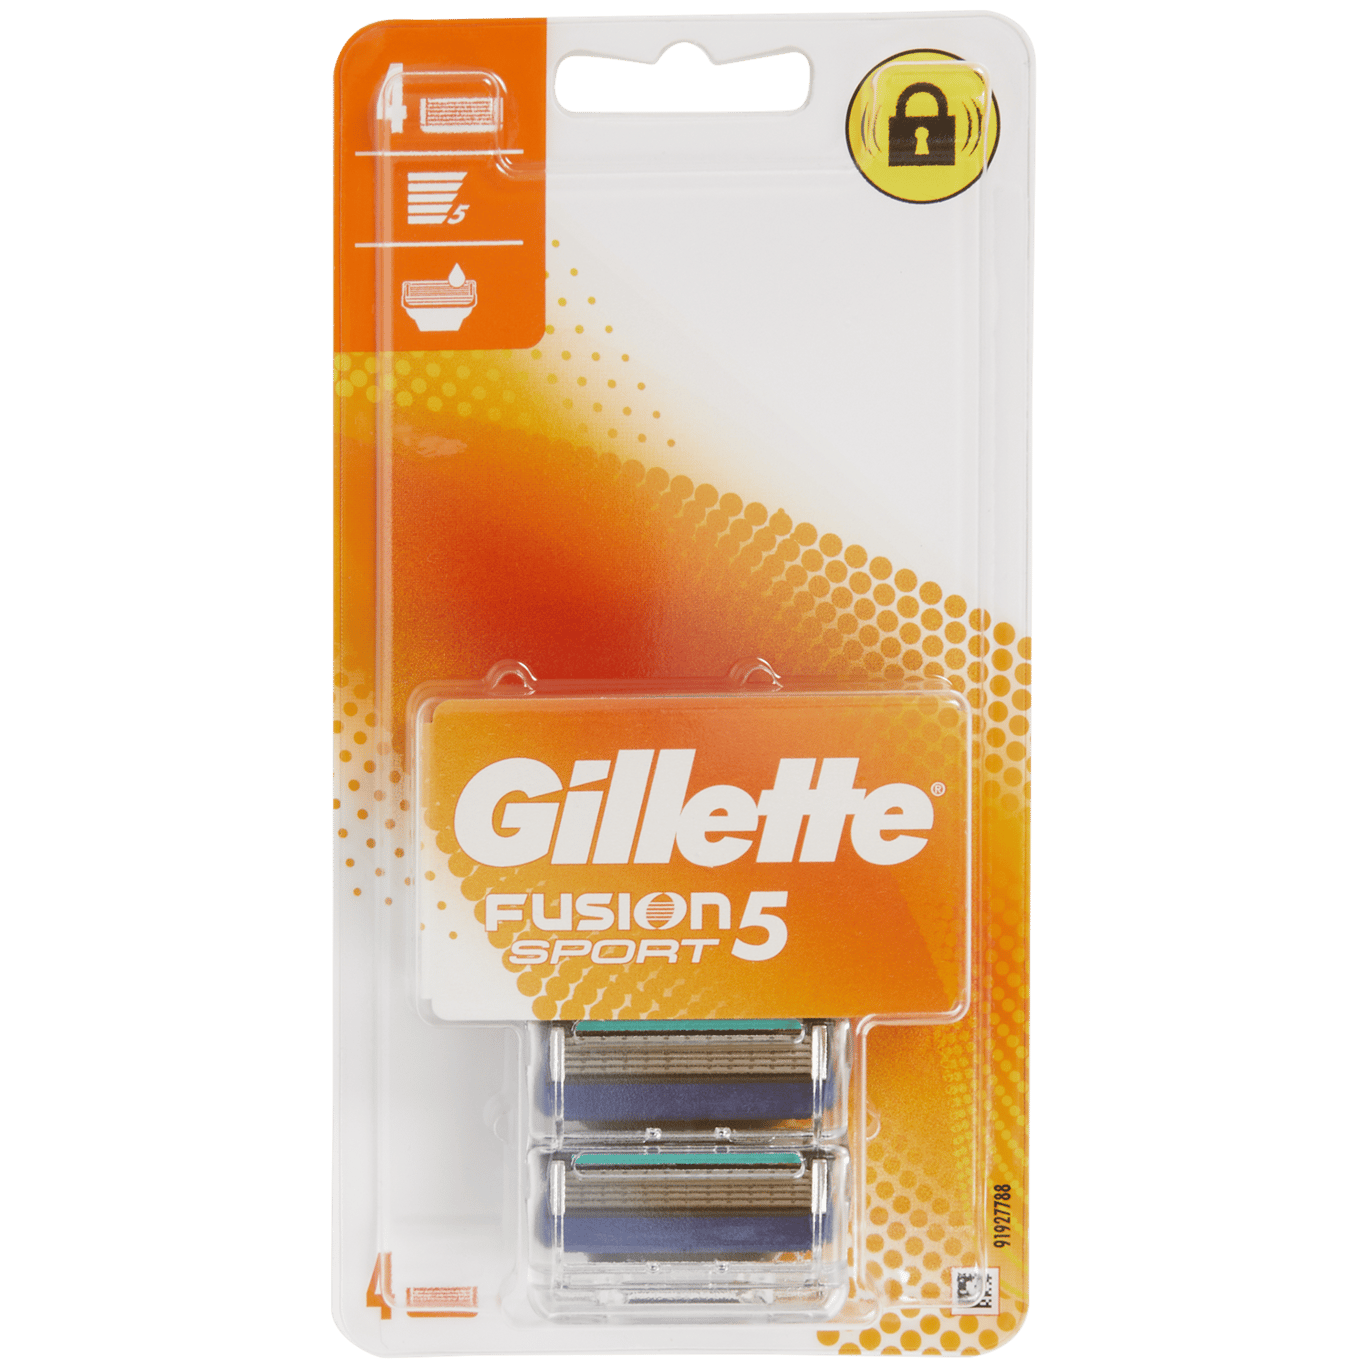 Žiletky Gillette Fusion5 Sport